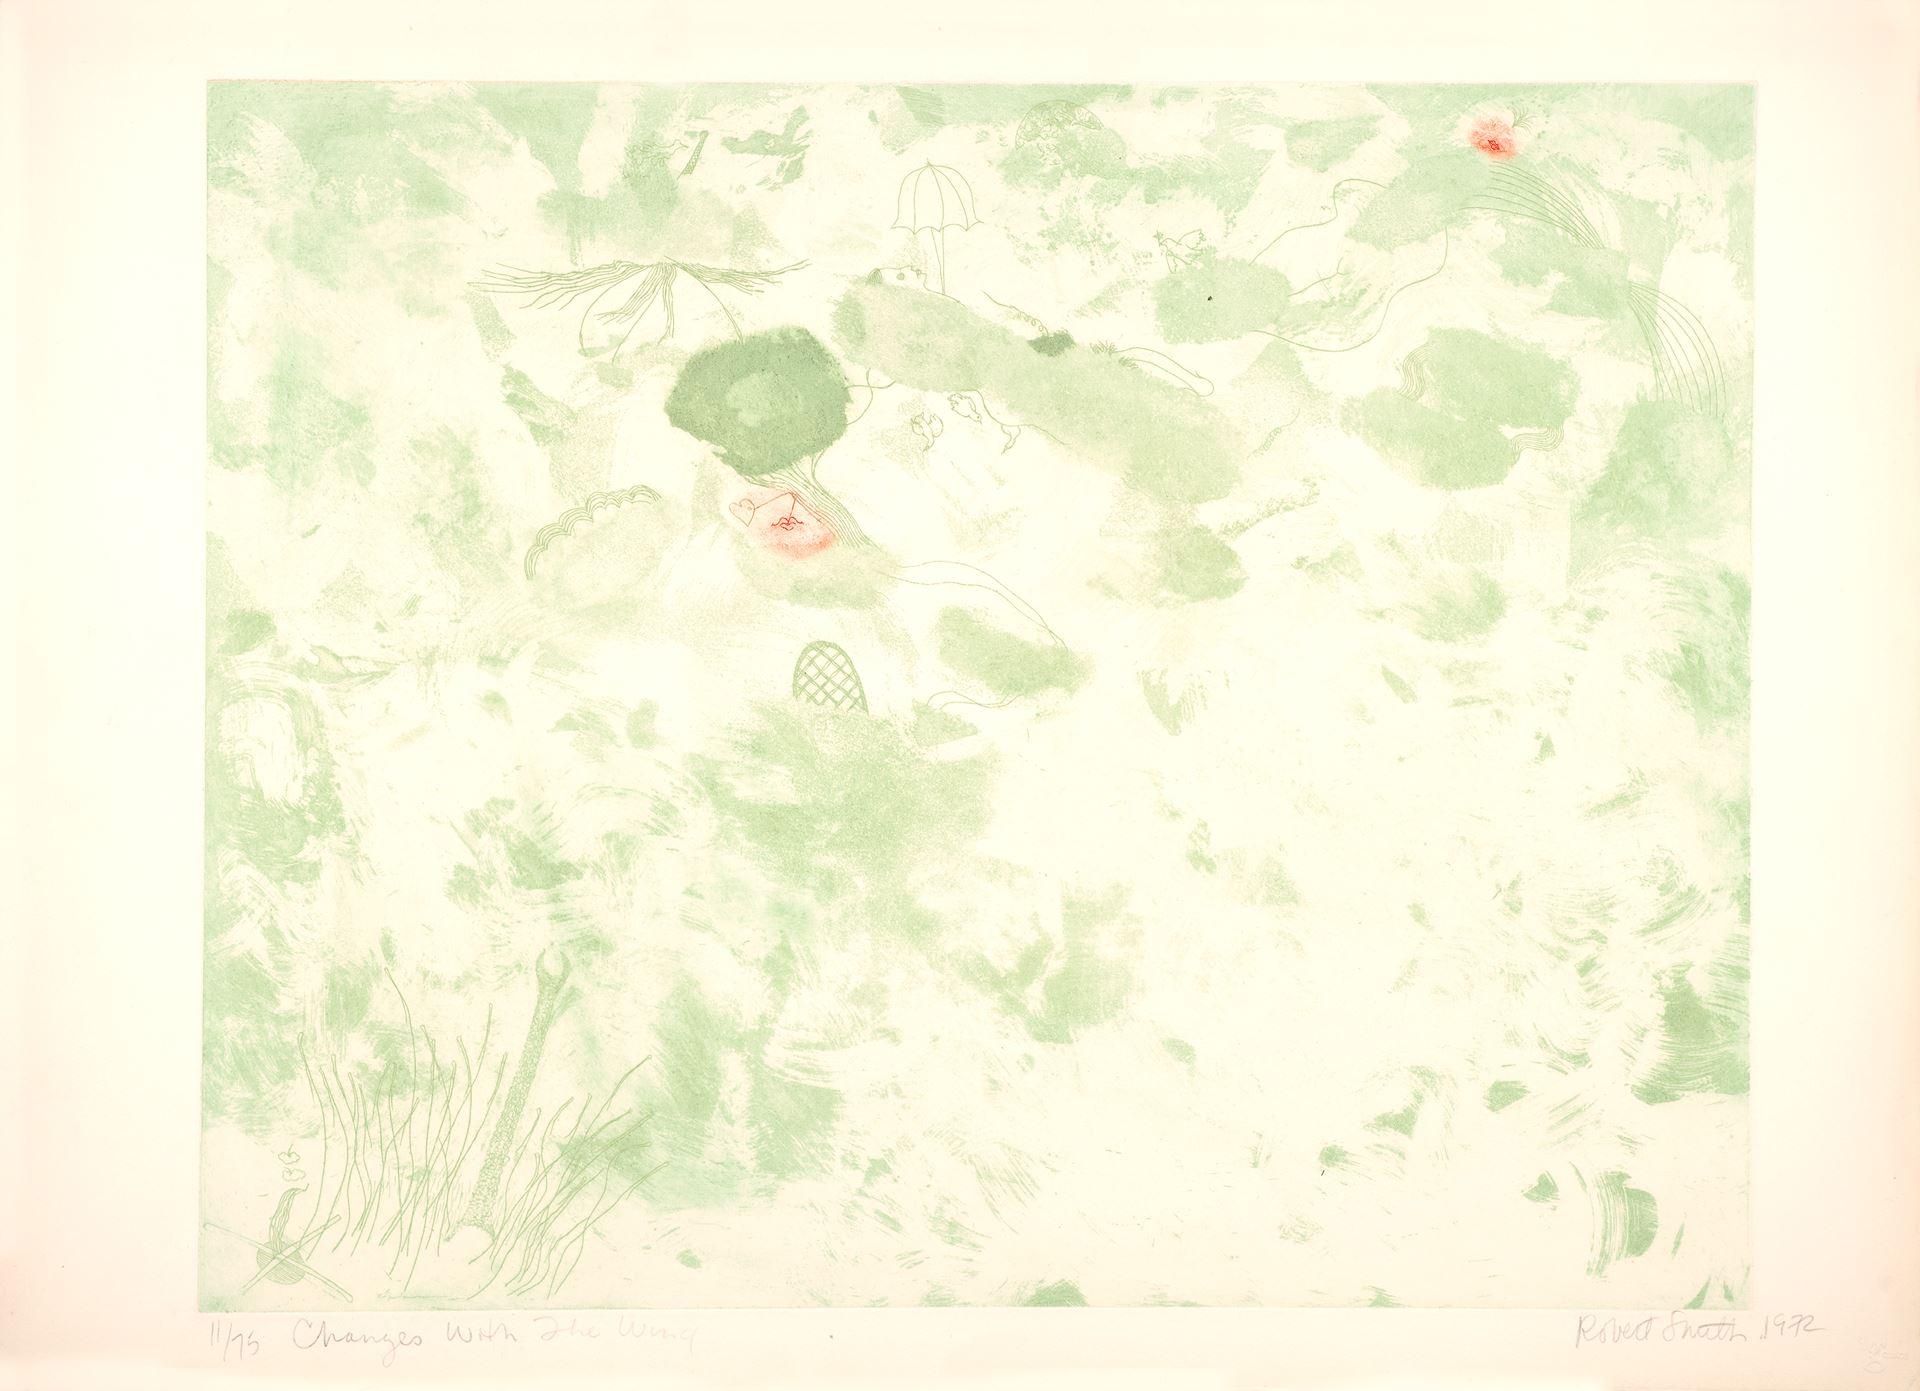 Robert Smith Abstract Print – American Artist signiert limitierte Auflage Original-Kunstdruck Radierung abstrakt